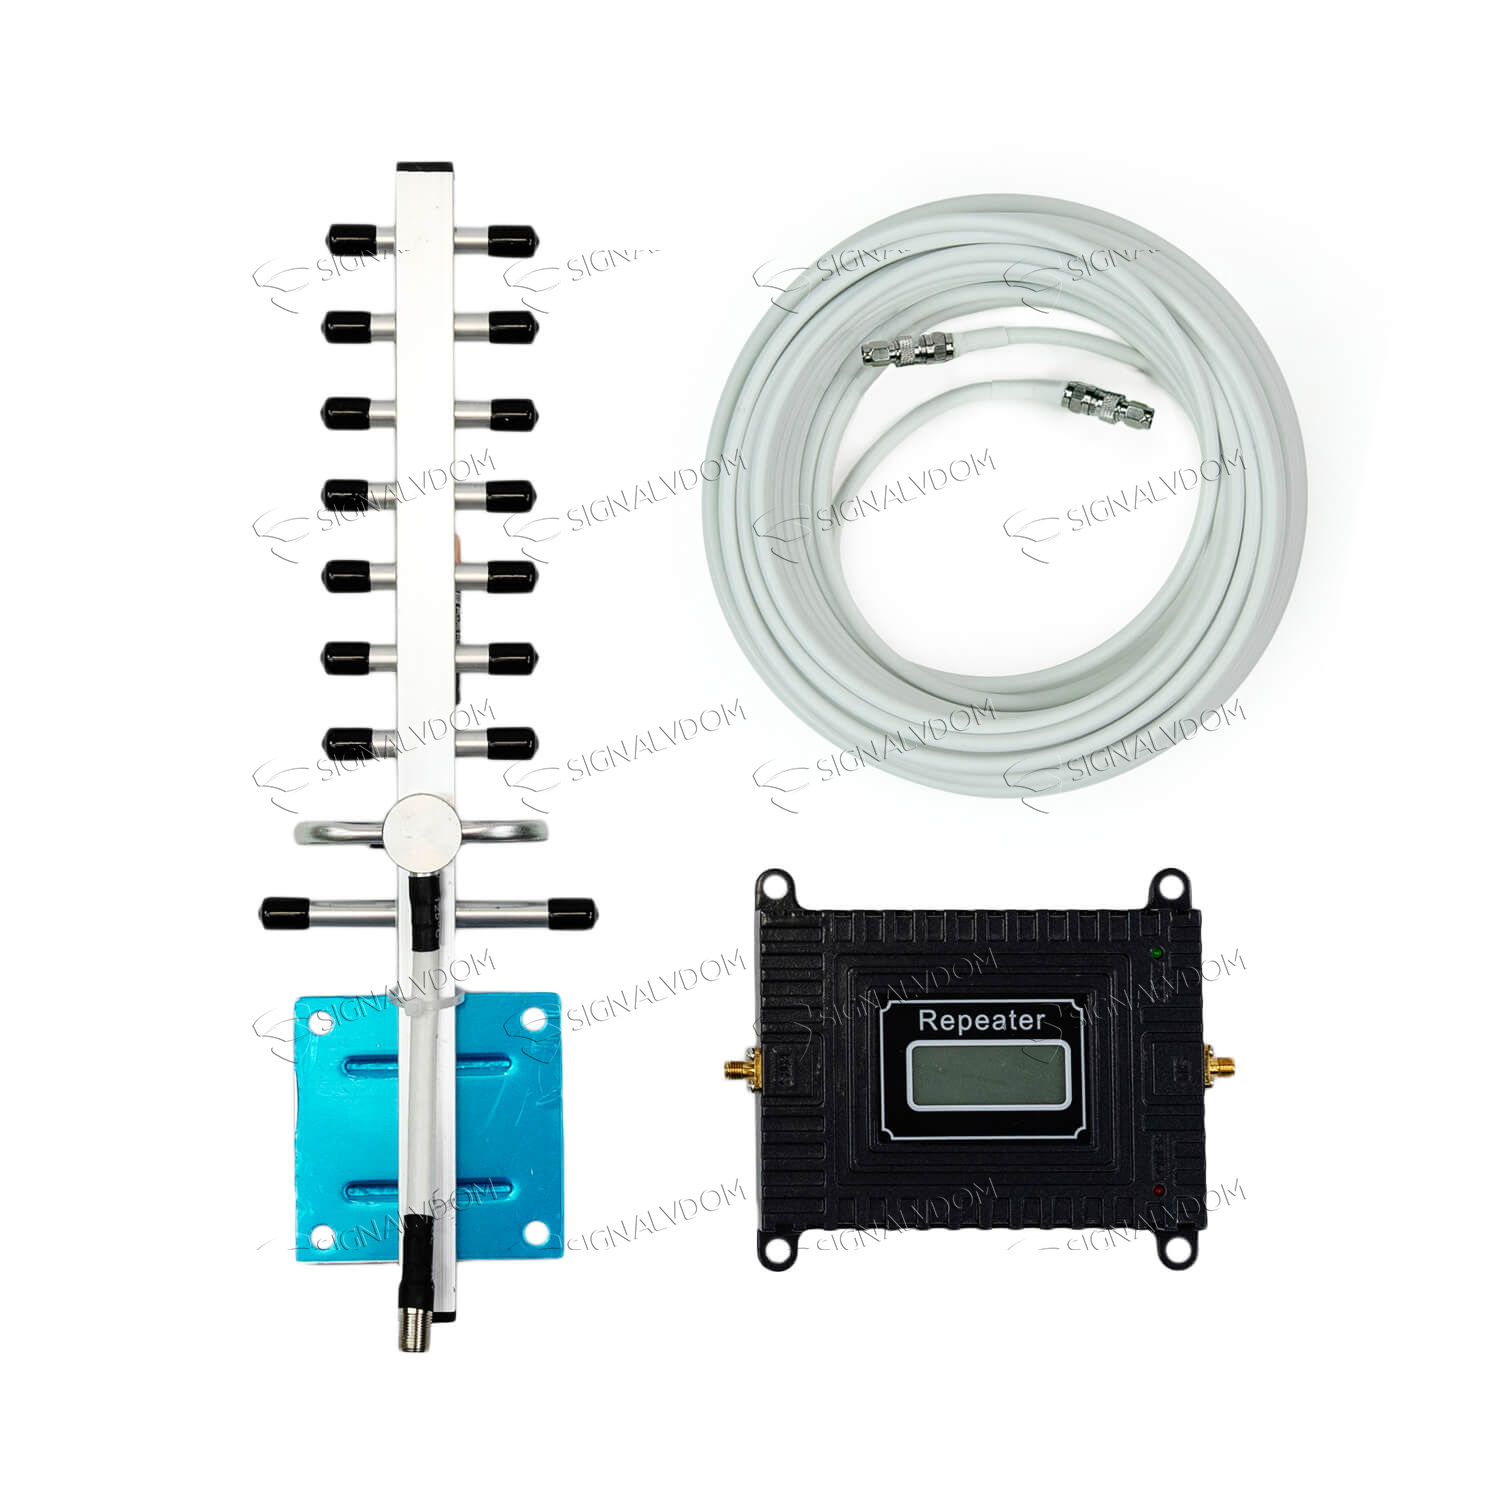 Усилитель сигнала Power Signal 2100 MHz (для 2G) 65 dBi, кабель 10 м., комплект